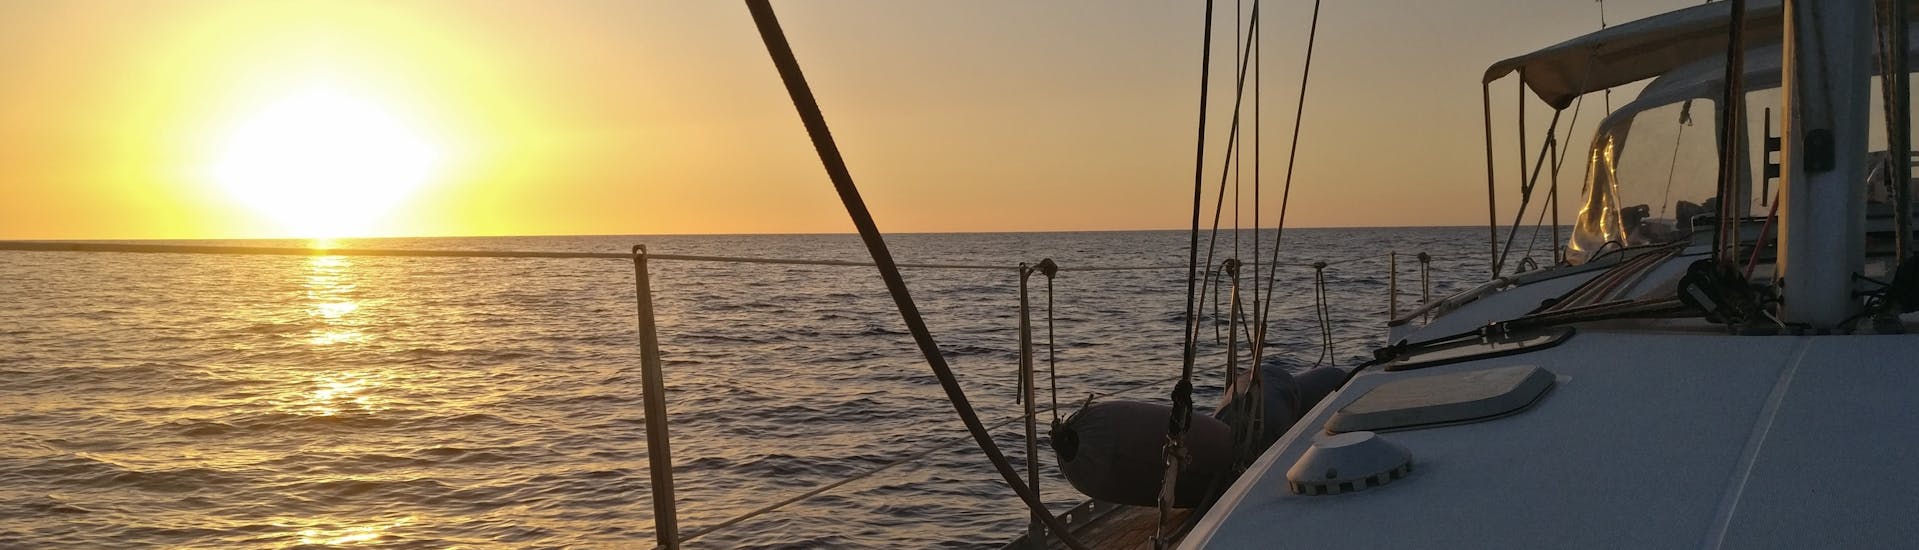 Vue de la mer au coucher du soleil depuis un bateau de Quarantesimo Parallelo Leuca pendant la balade en voilier de Leuca sur la Côte du Salento.